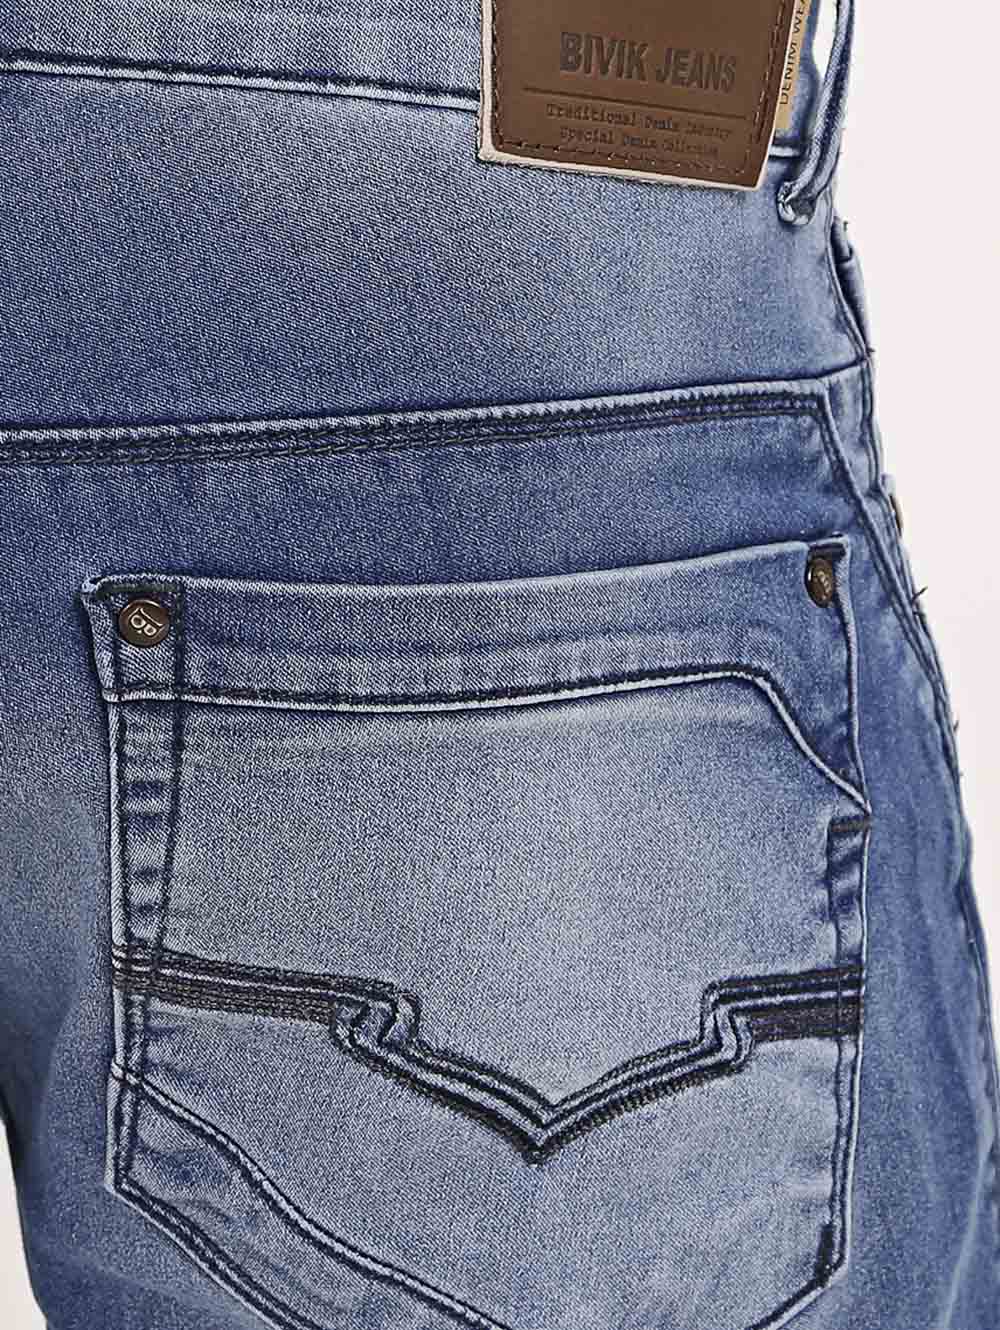 jaqueta jeans masculina bivik